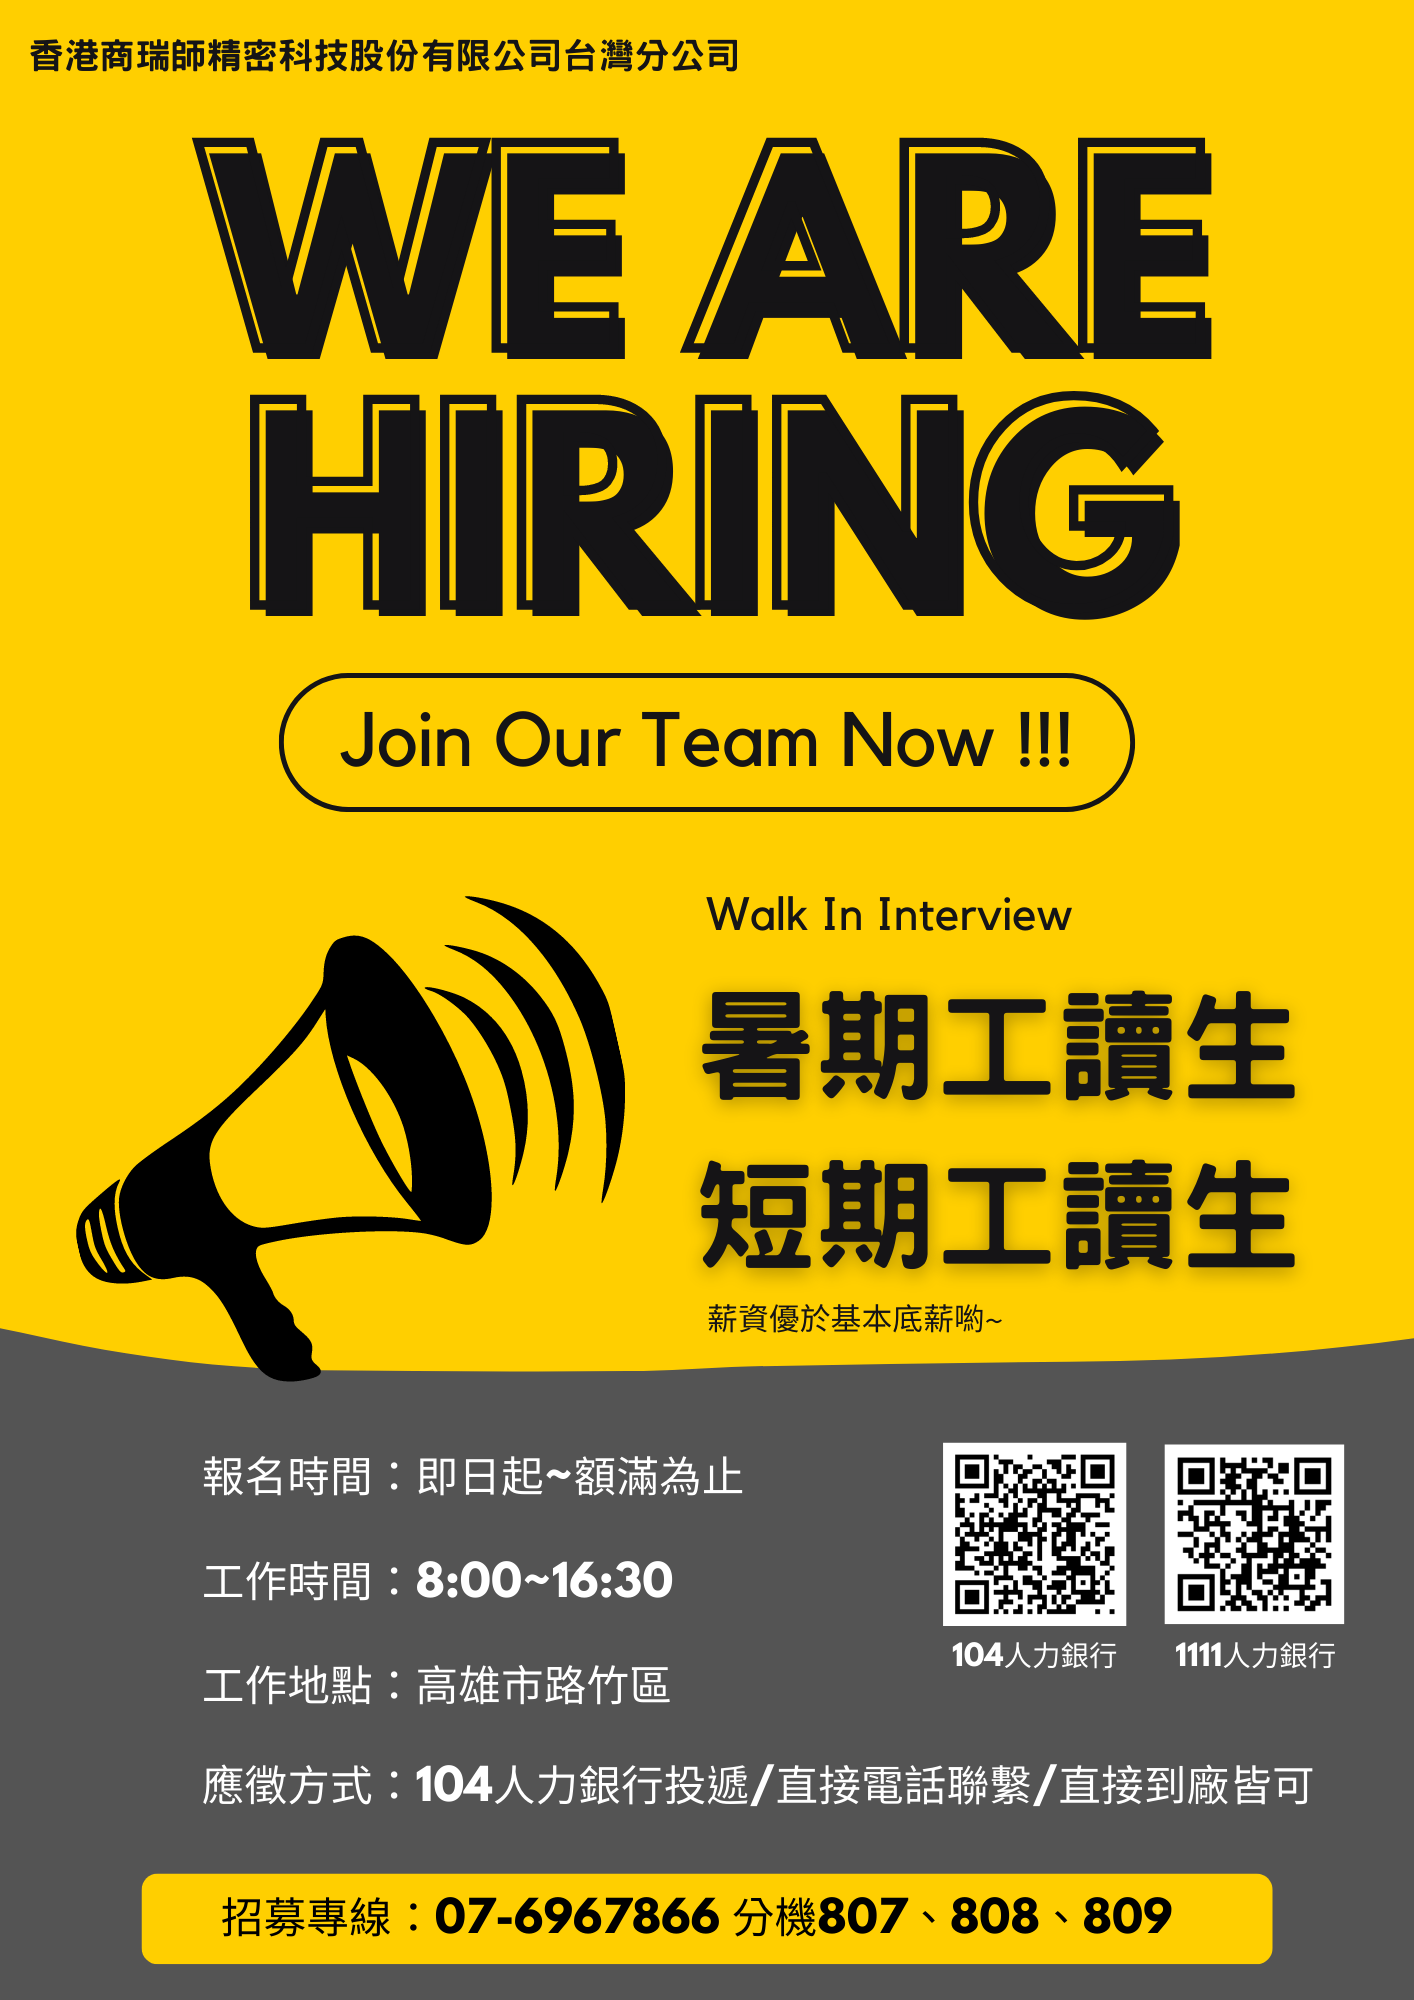 (轉知_工讀訊息)【香港商瑞師精密科技股份有限公司台灣分公司】招募工讀生，歡迎有興趣者把握機會。